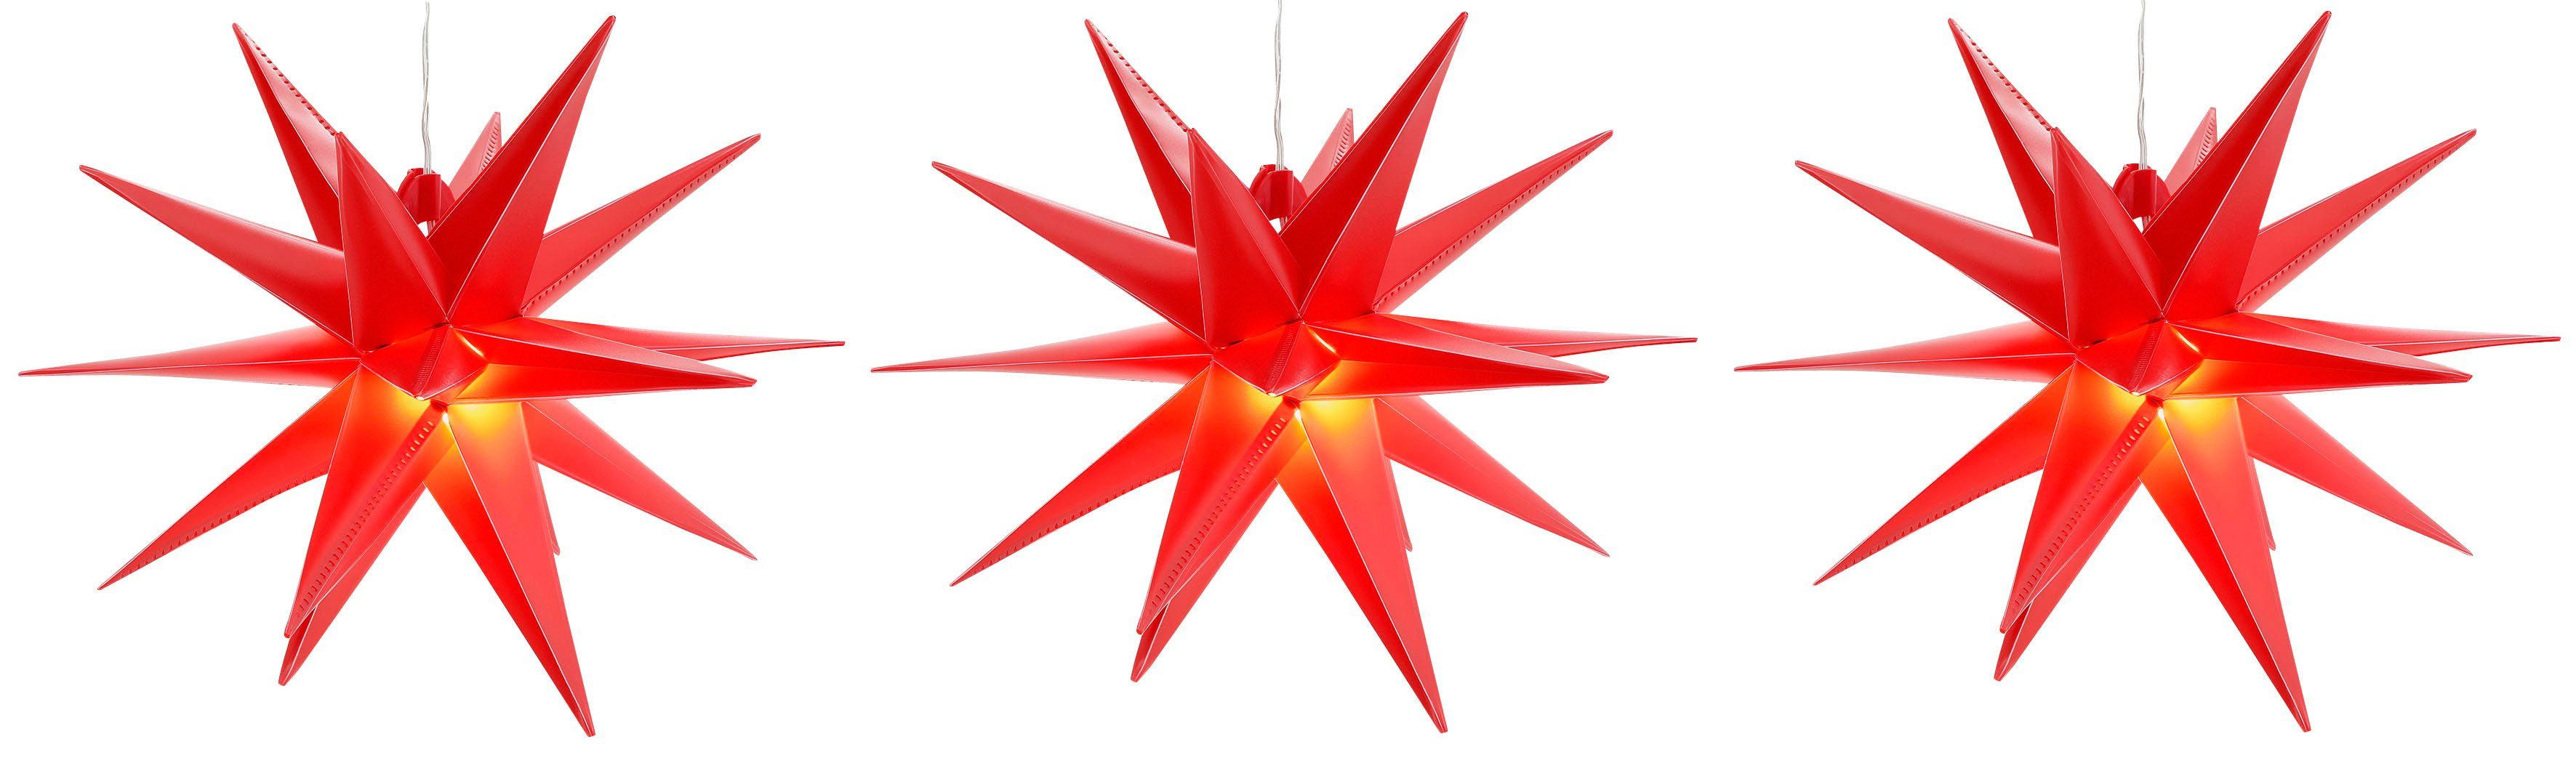 BONETTI LED Stern Weihnachtsstern, Timerfunktion, LED fest integriert, Warmweiß, 3D-Optik, Batteriebetrieb, Ø 25 cm, Weihnachtsdeko aussen rot